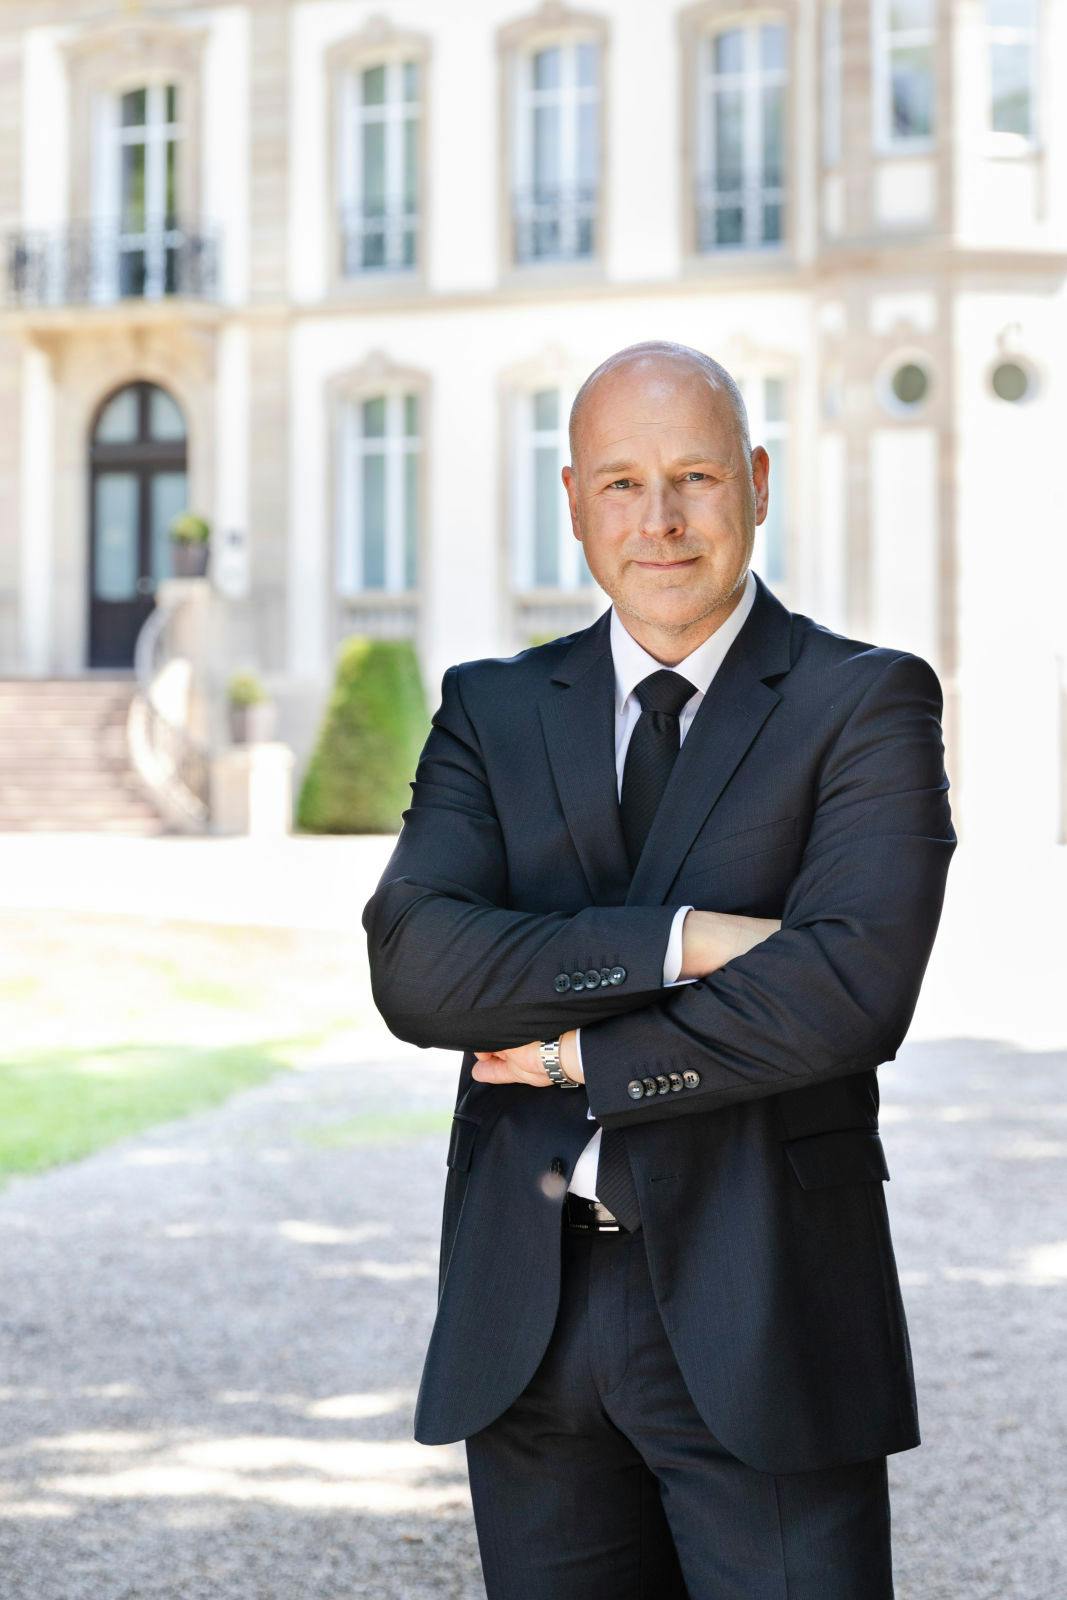 Michael Och leitet seit August die Qualitätssicherung bei Bugatti in Molsheim